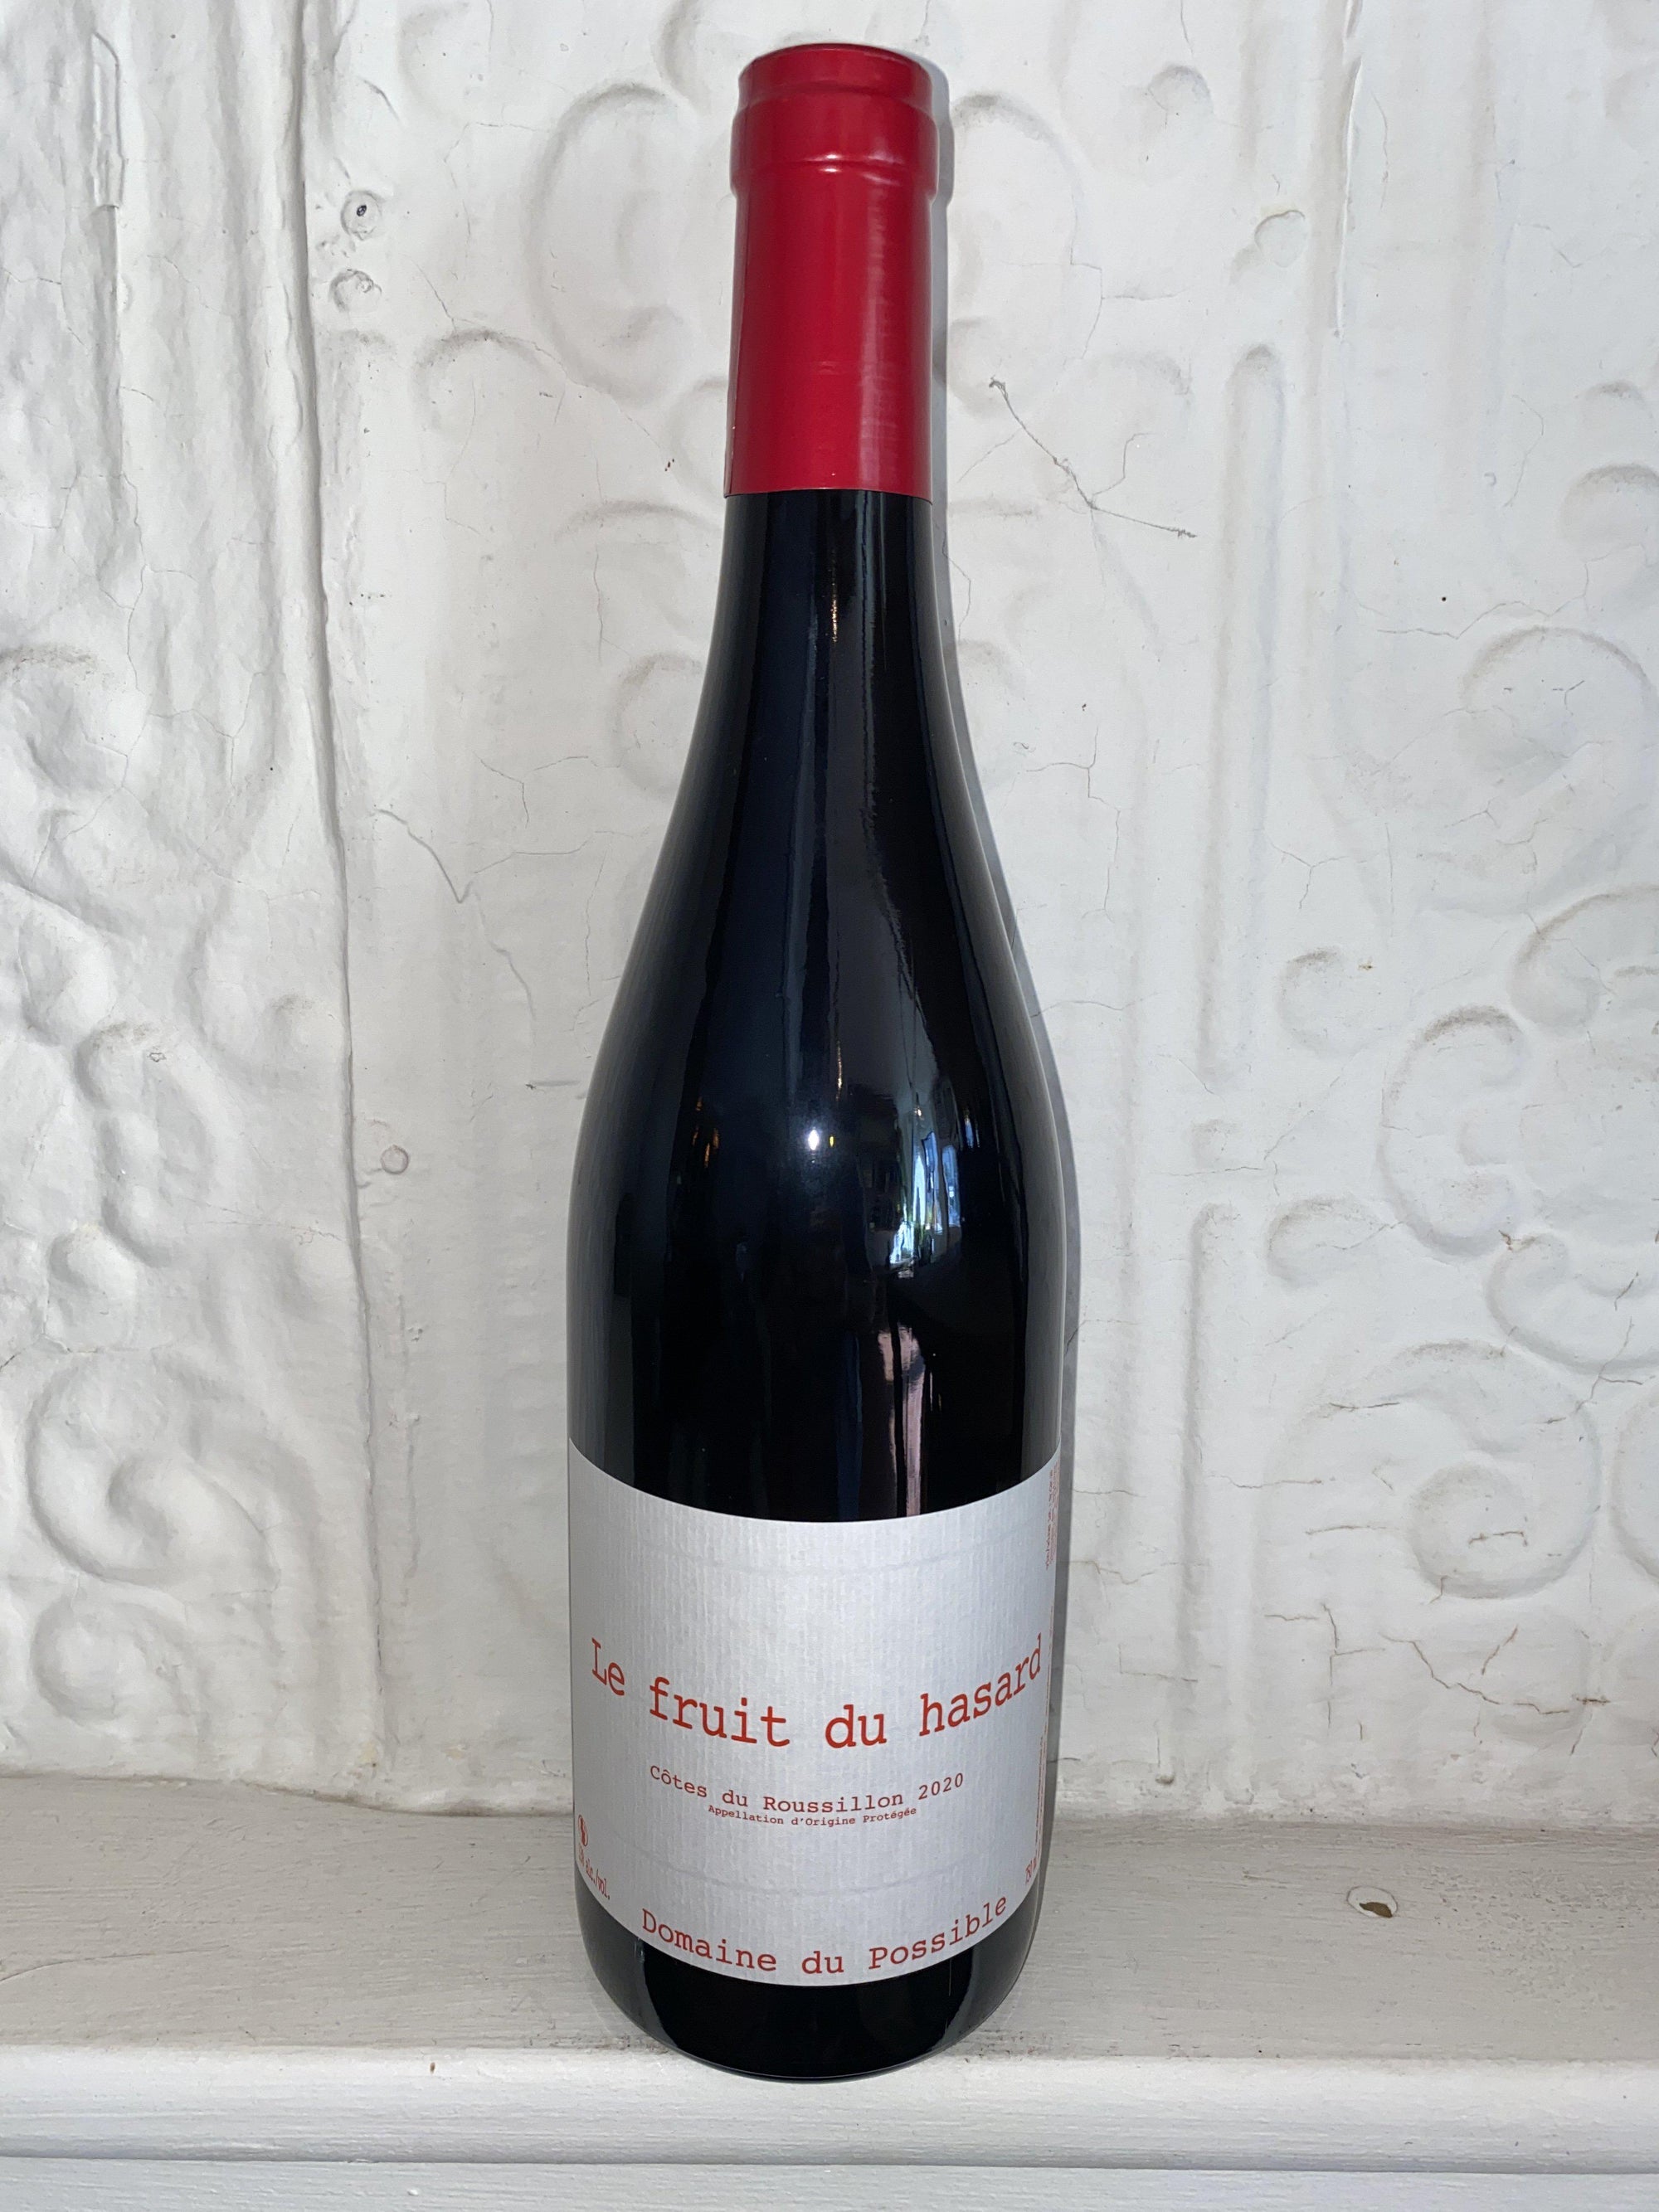 Le Fruit du Hasard, Domaine du Possible 2020 (Roussillon, France)-Wine-Bibber & Bell